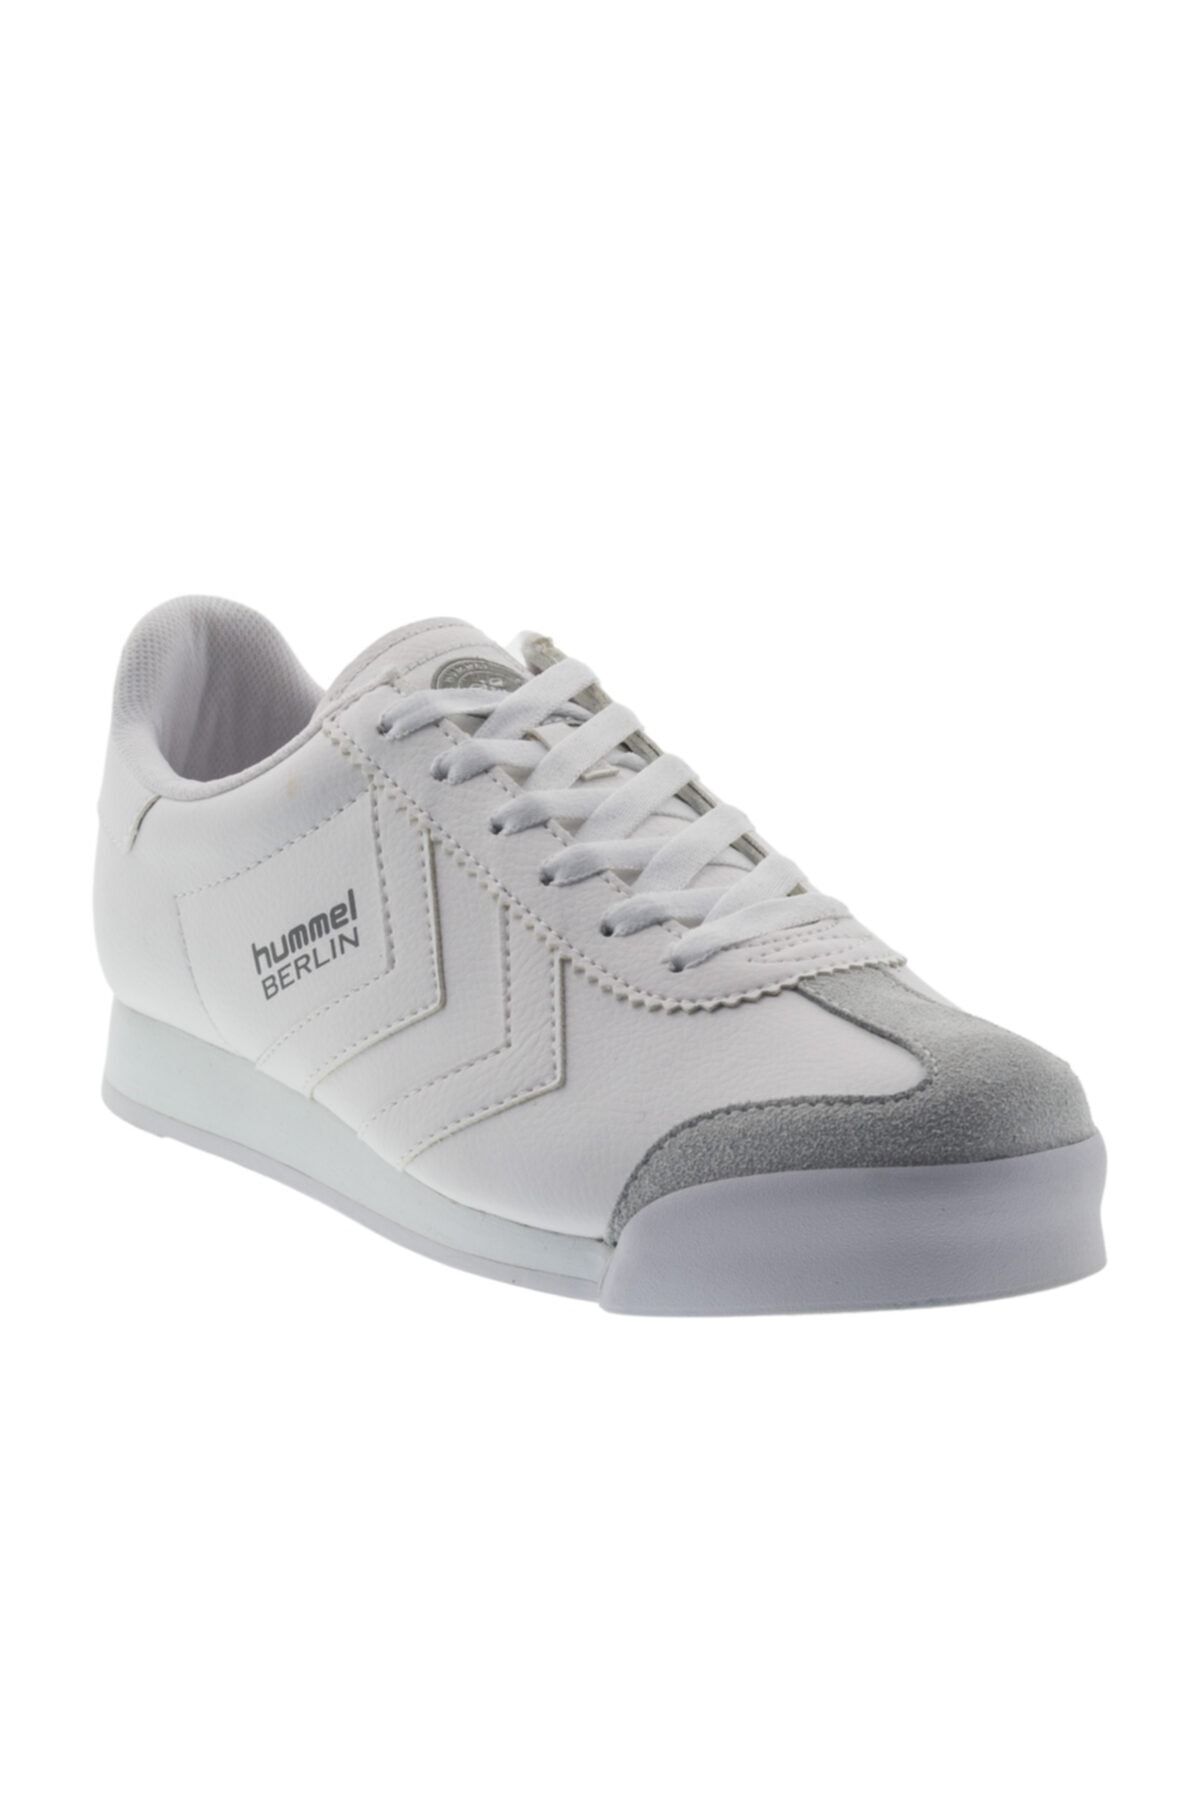 hummel Berlin Sneaker Beyaz Kadın Sneaker Ayakkabı 100433851